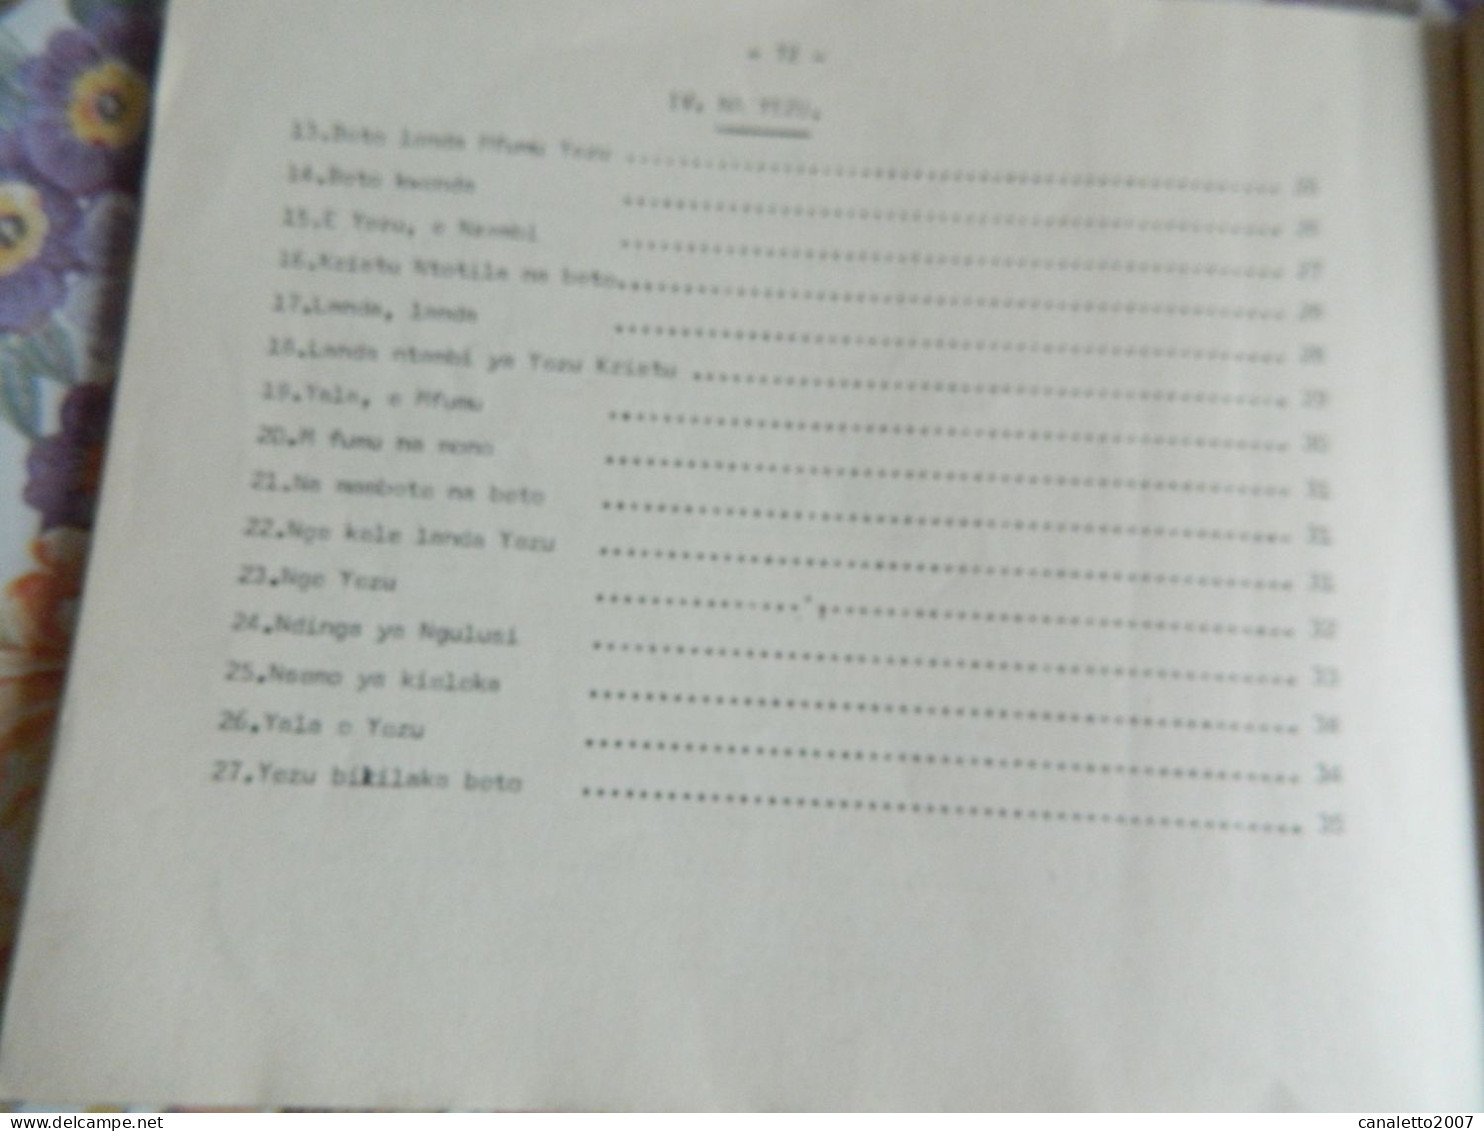 KIKWIT +CONGO: LIVRET DE CHANSONS POUR LA MESS DE 1969 -BETO YIMBA 76 PAGES EN LANGUE DU CONGO -SWAILI ??